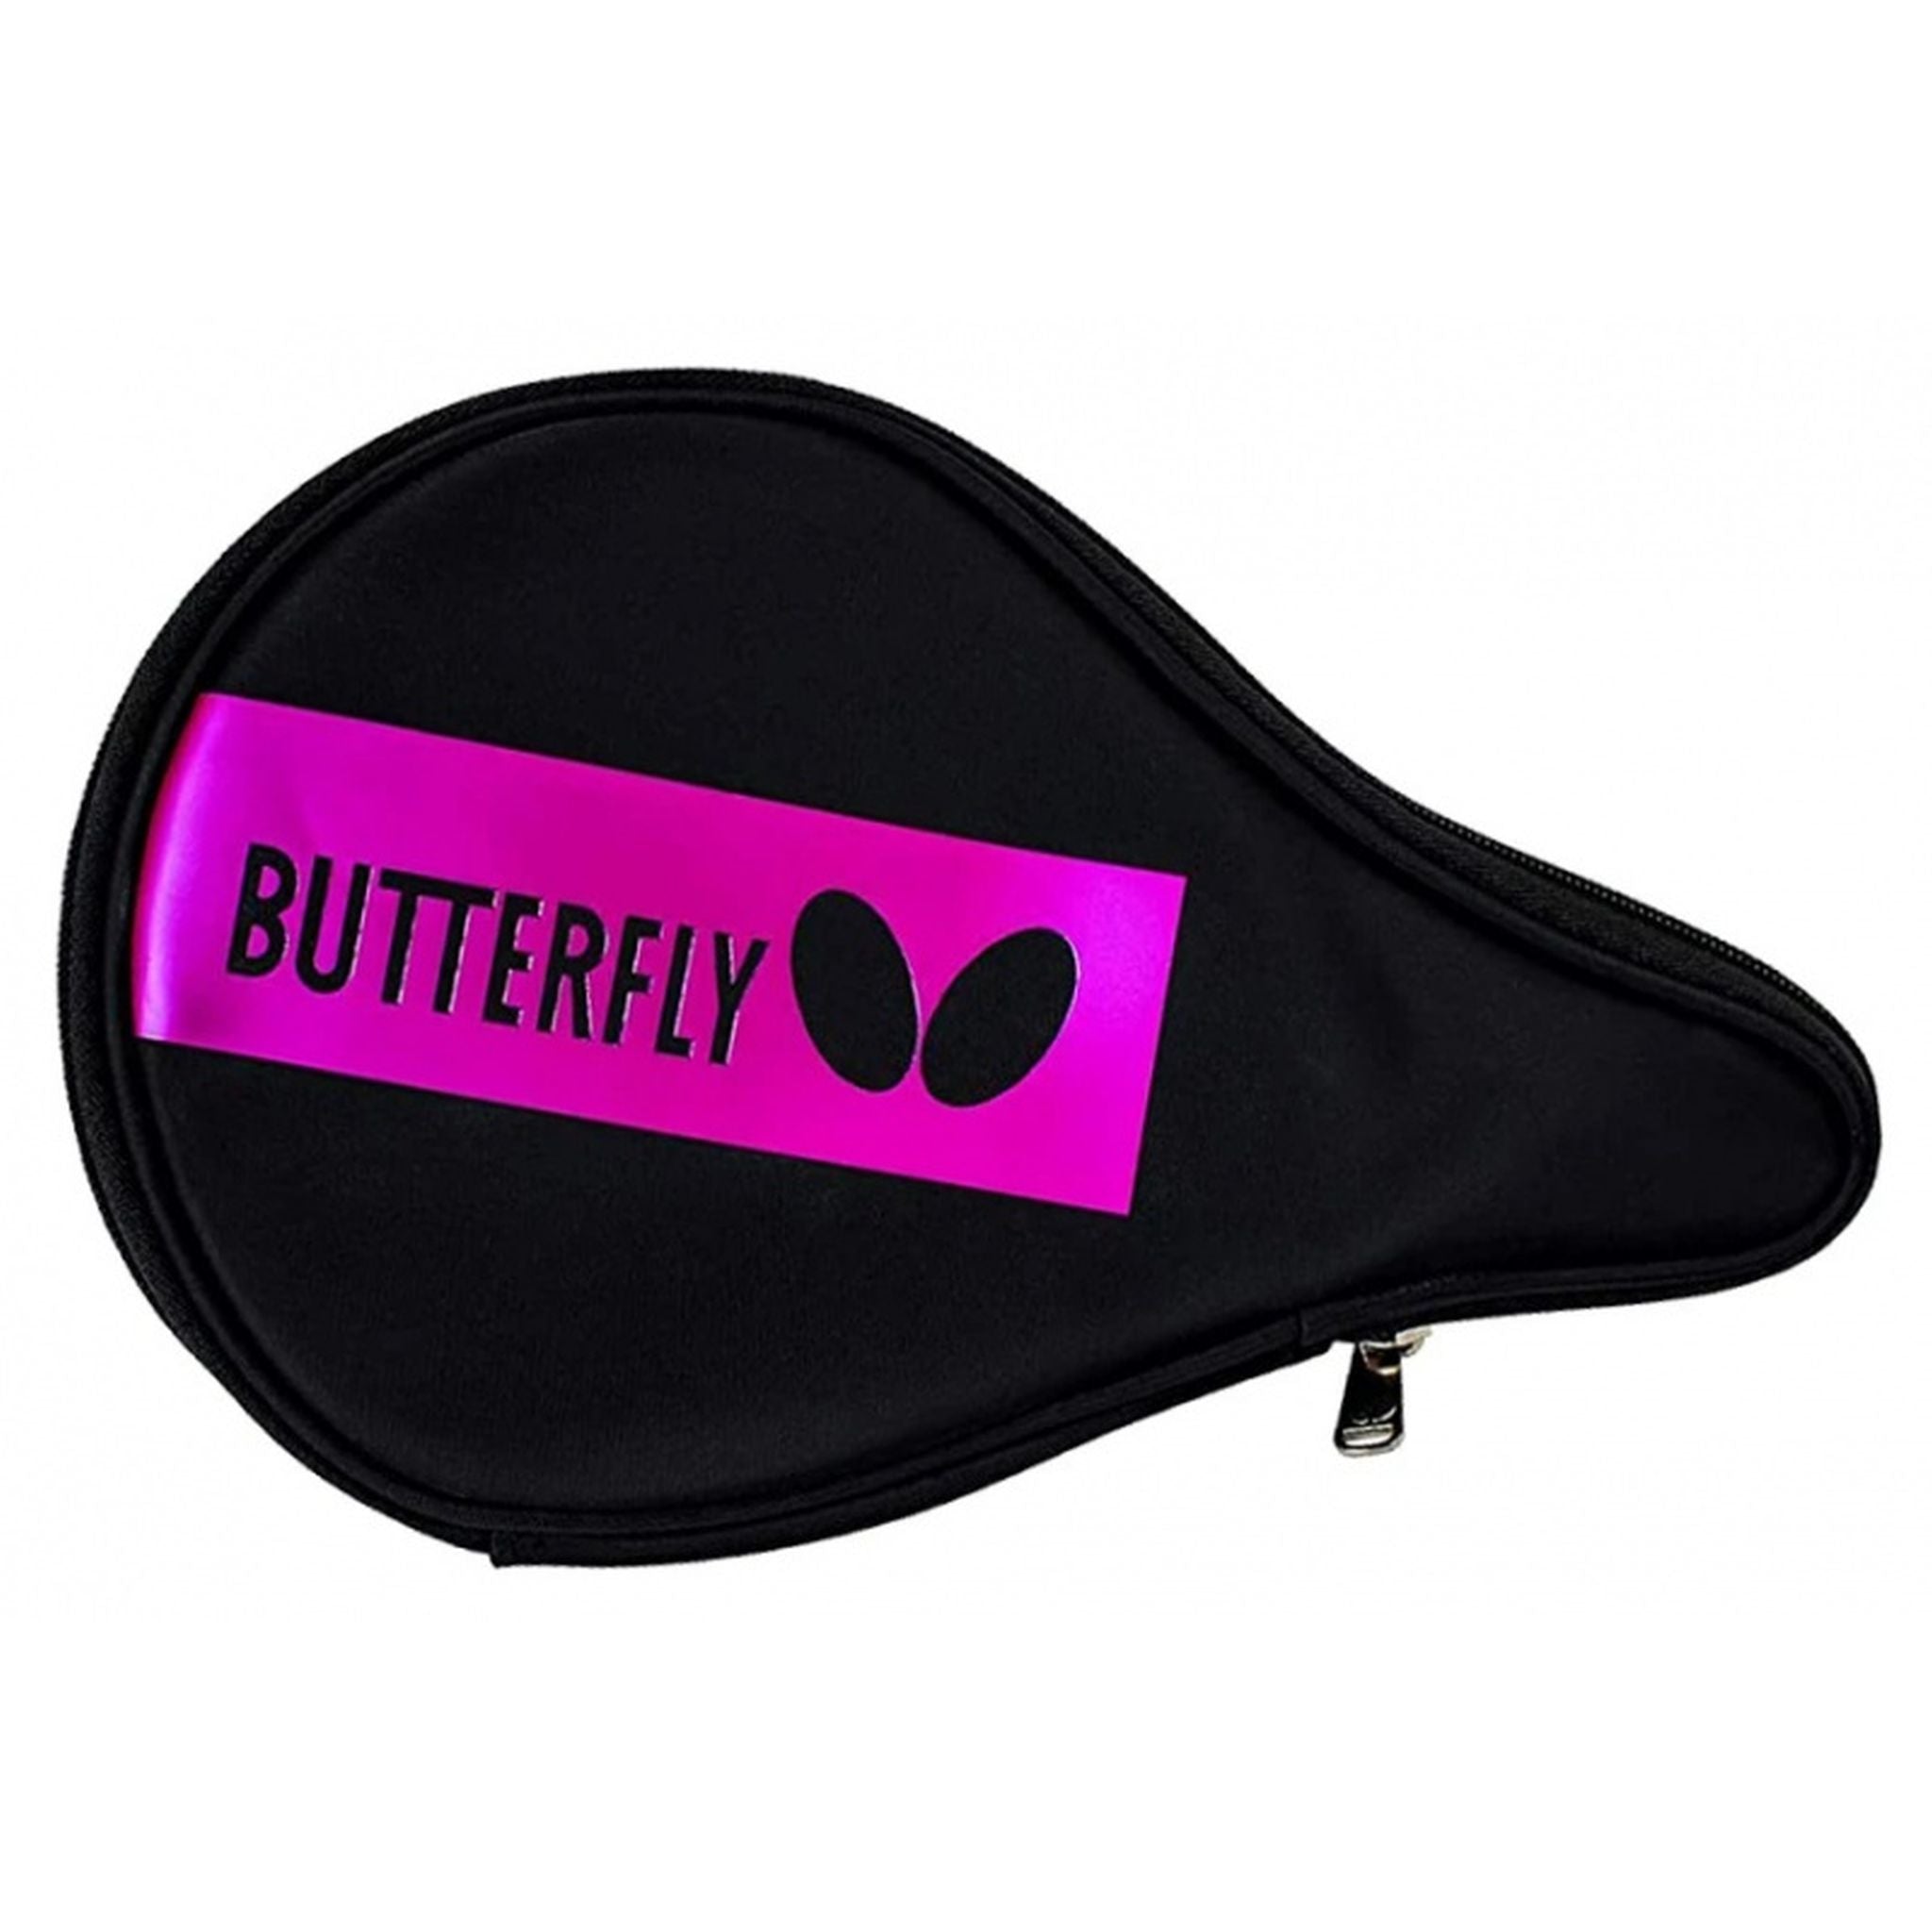 Butterfly BD Single Table Tennis Bat Case